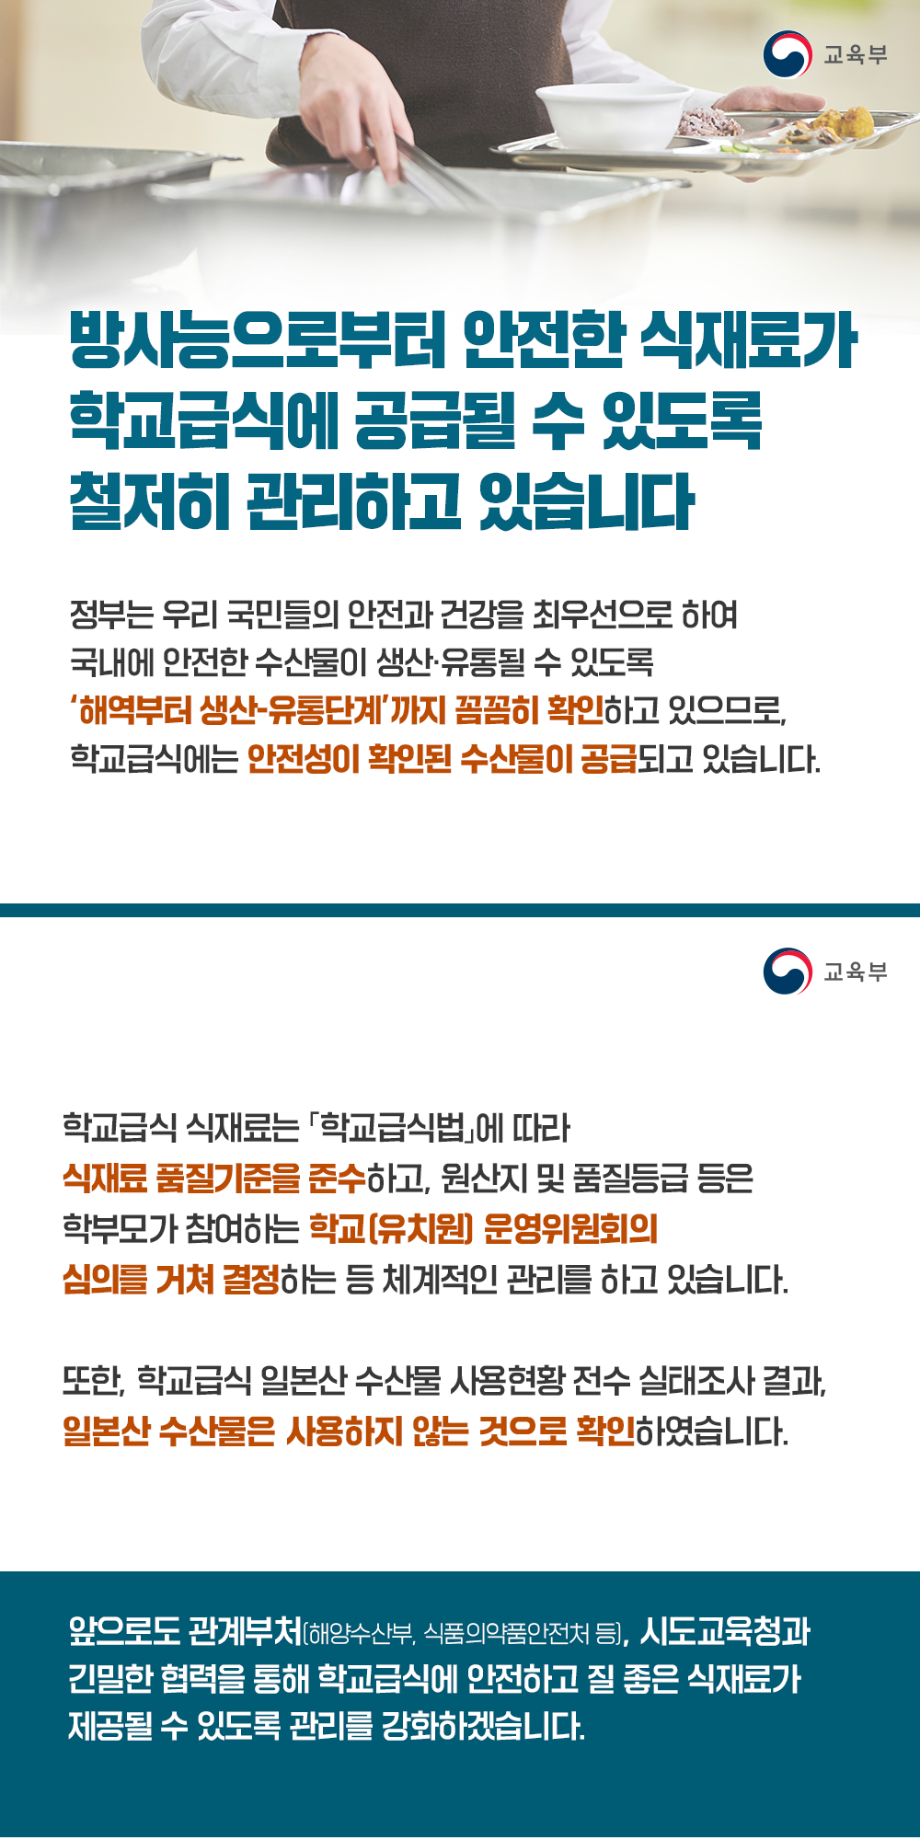 서울특별시성동광진교육지원청 평생교육건강과_카드뉴스.png